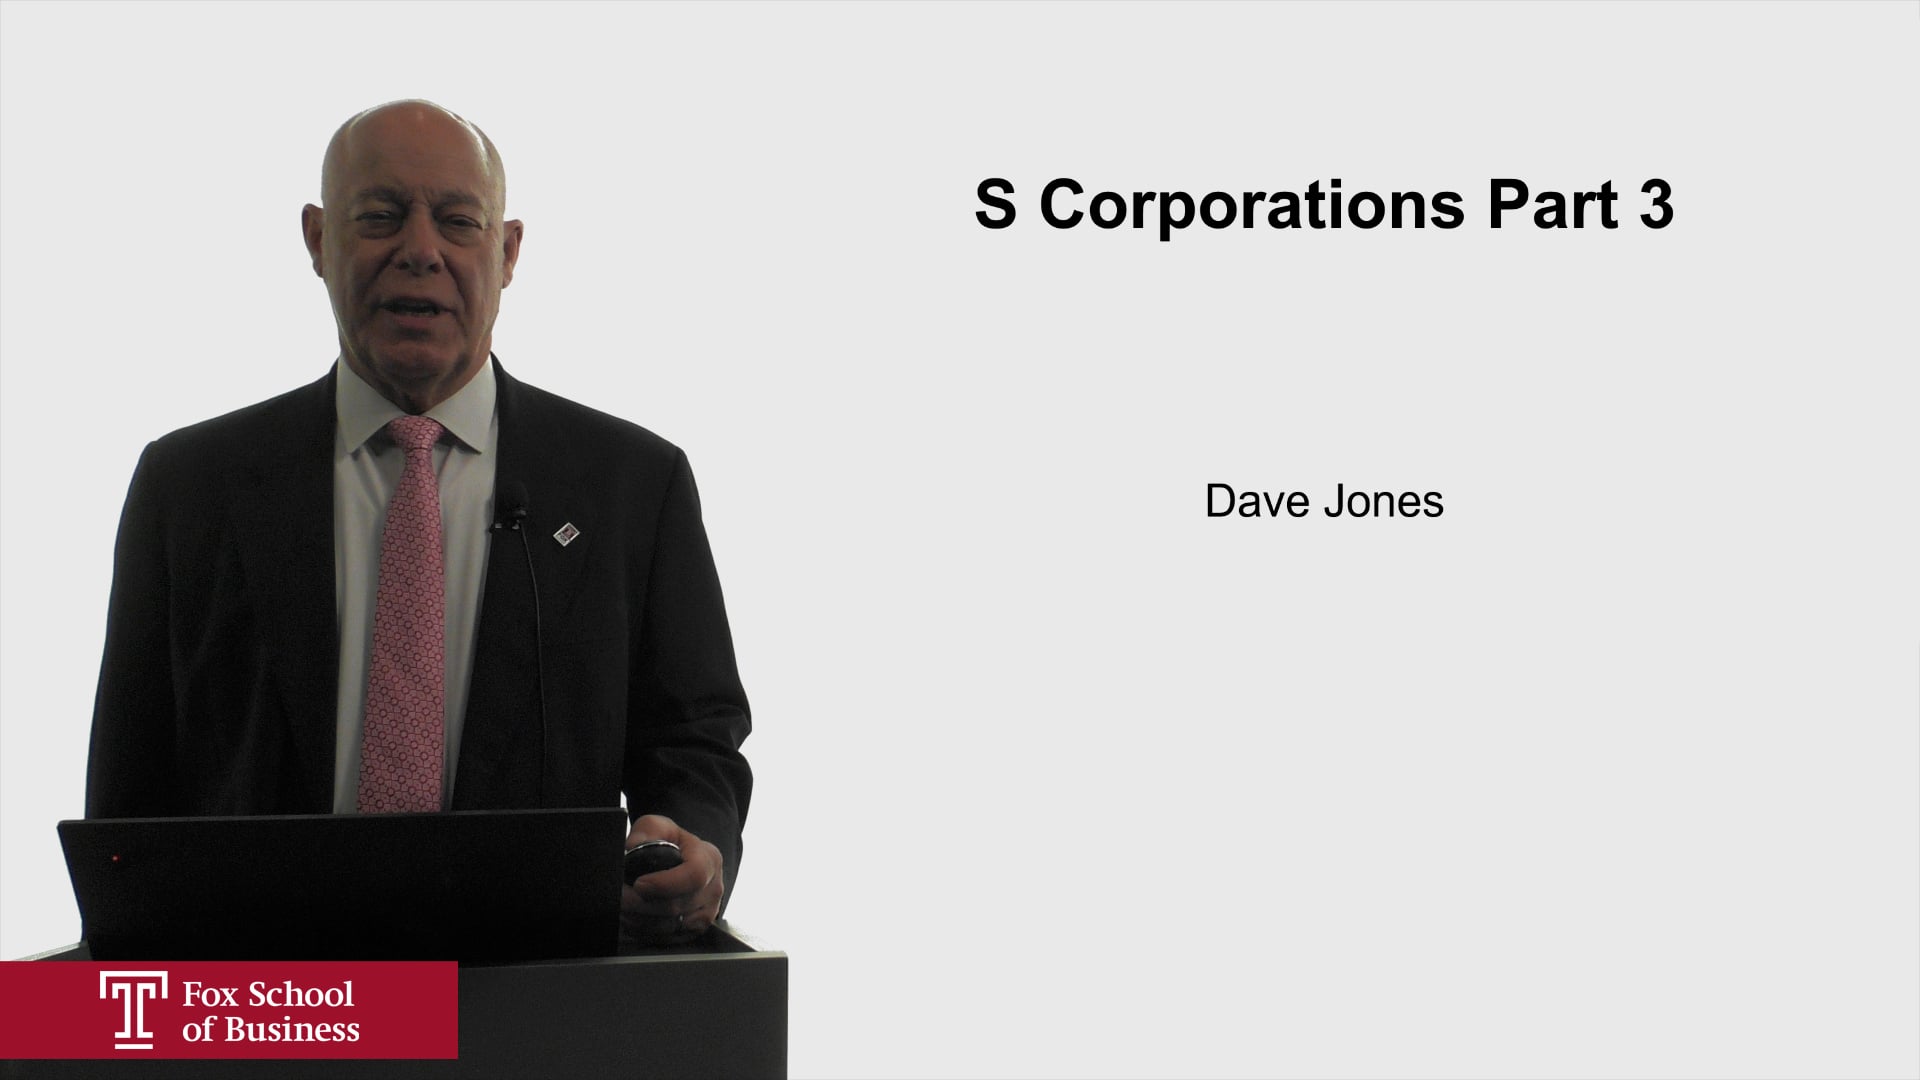 S Corporations Part 3